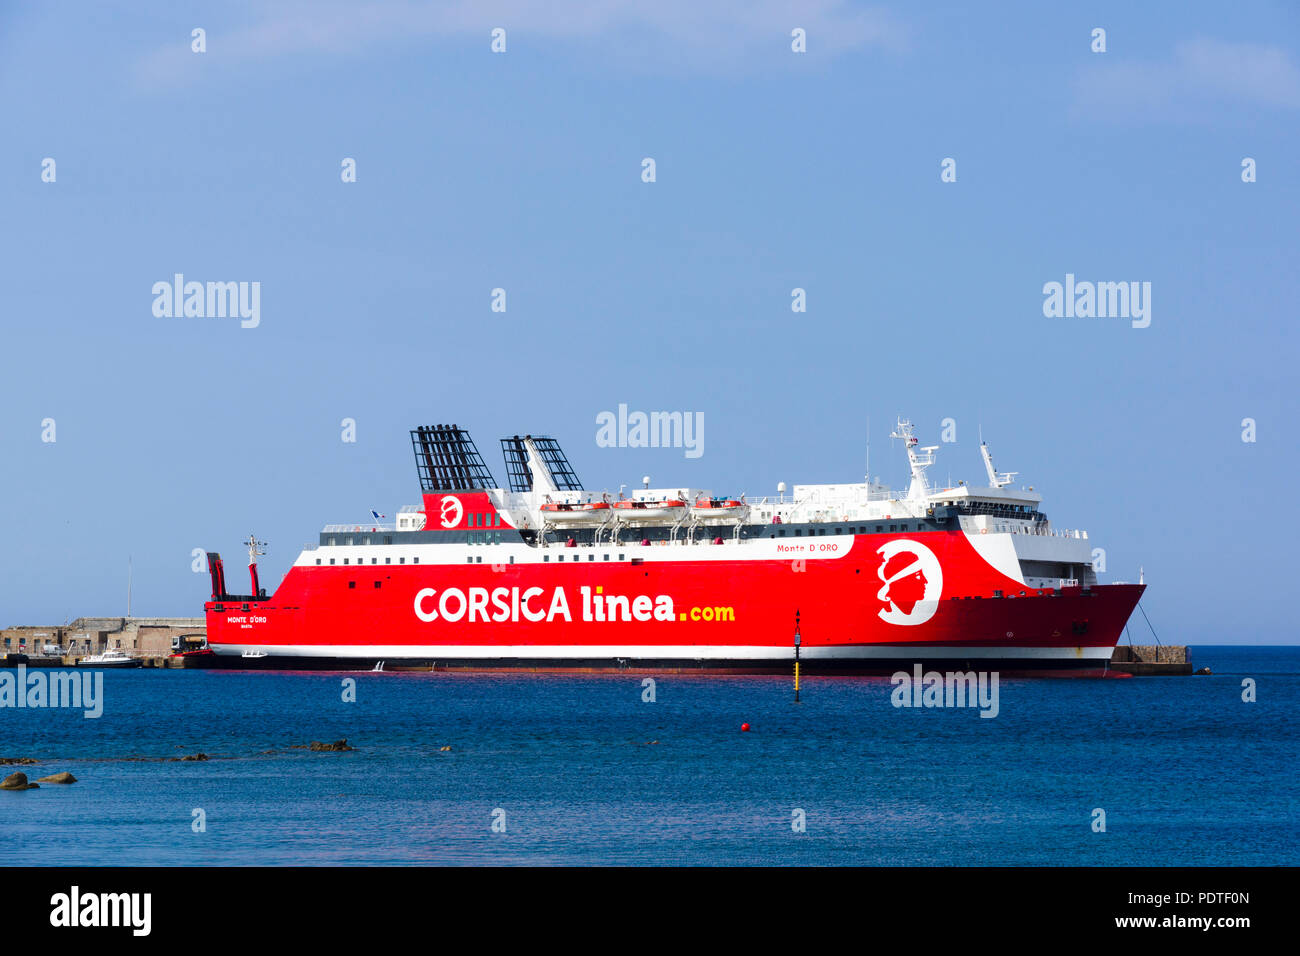 Corsica Linea ferry 'Monte d'Oro', L'Île-Rousse, Corsica, France Stock Photo